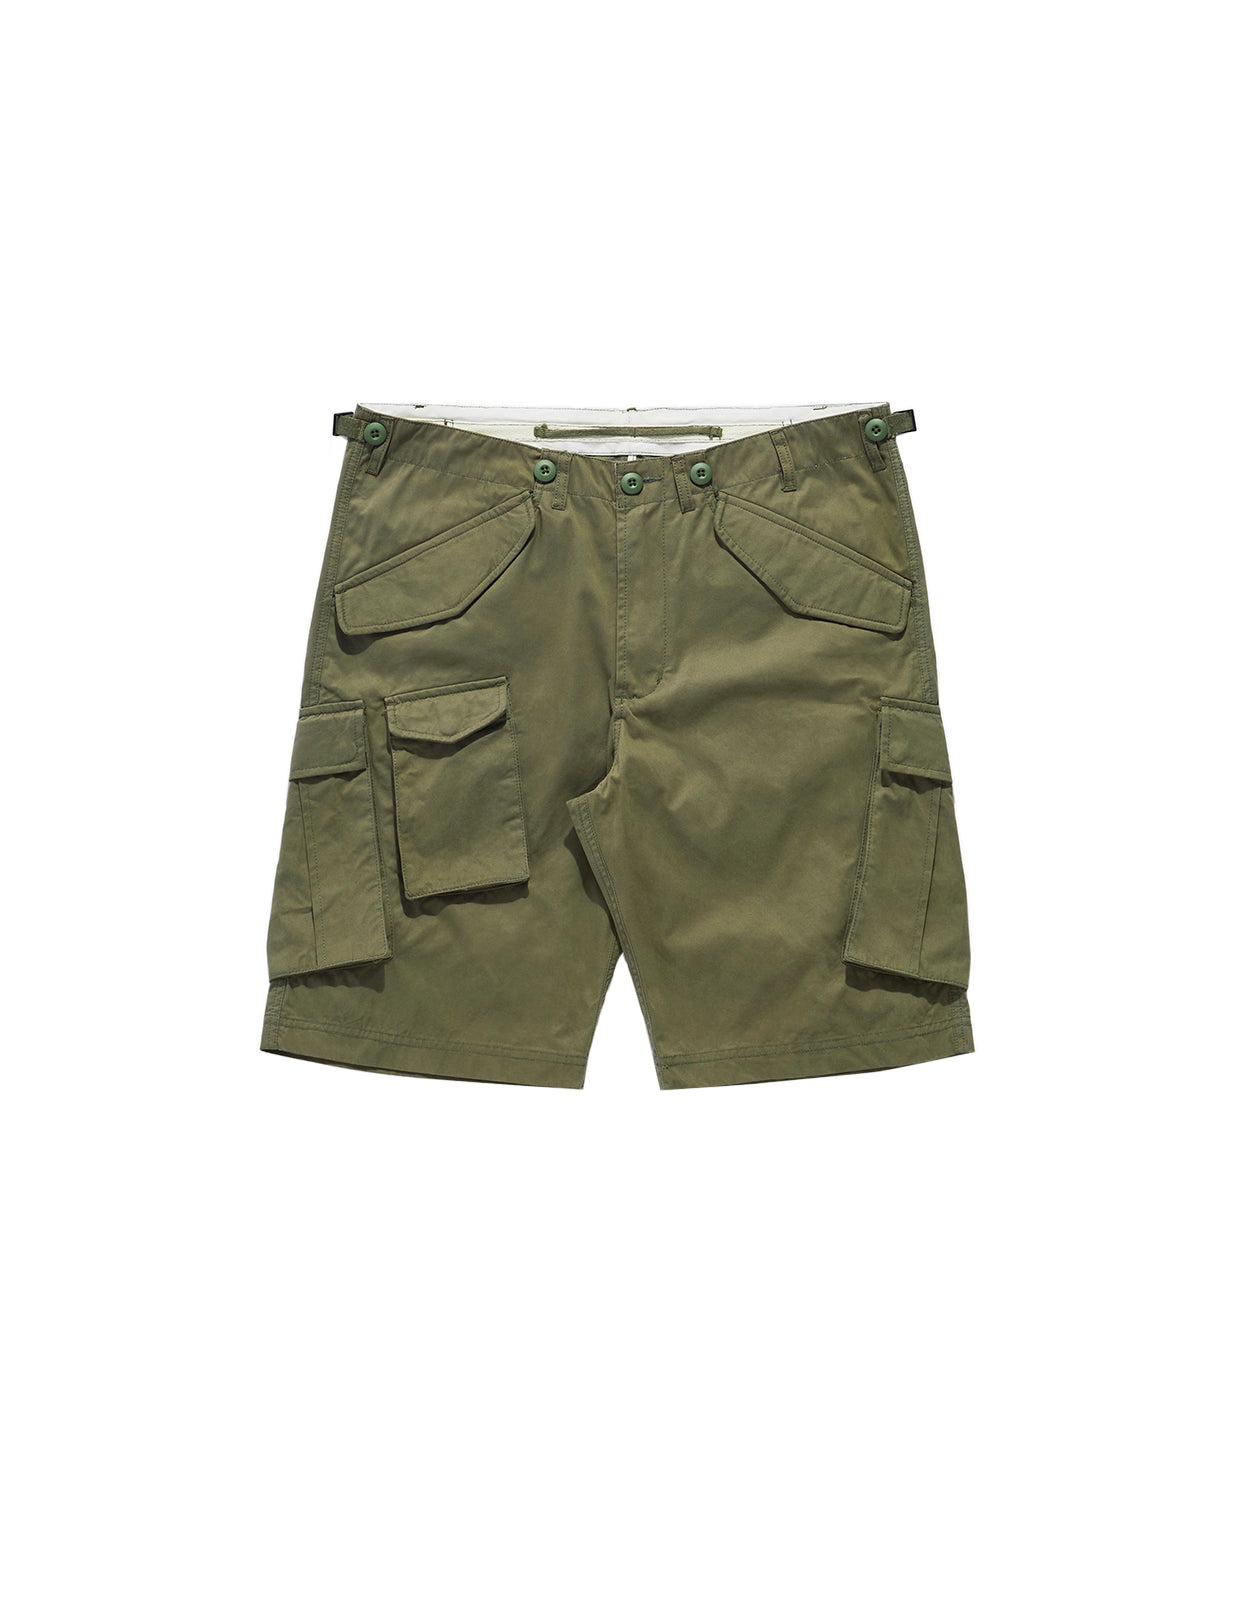 M65 Cargo Shorts